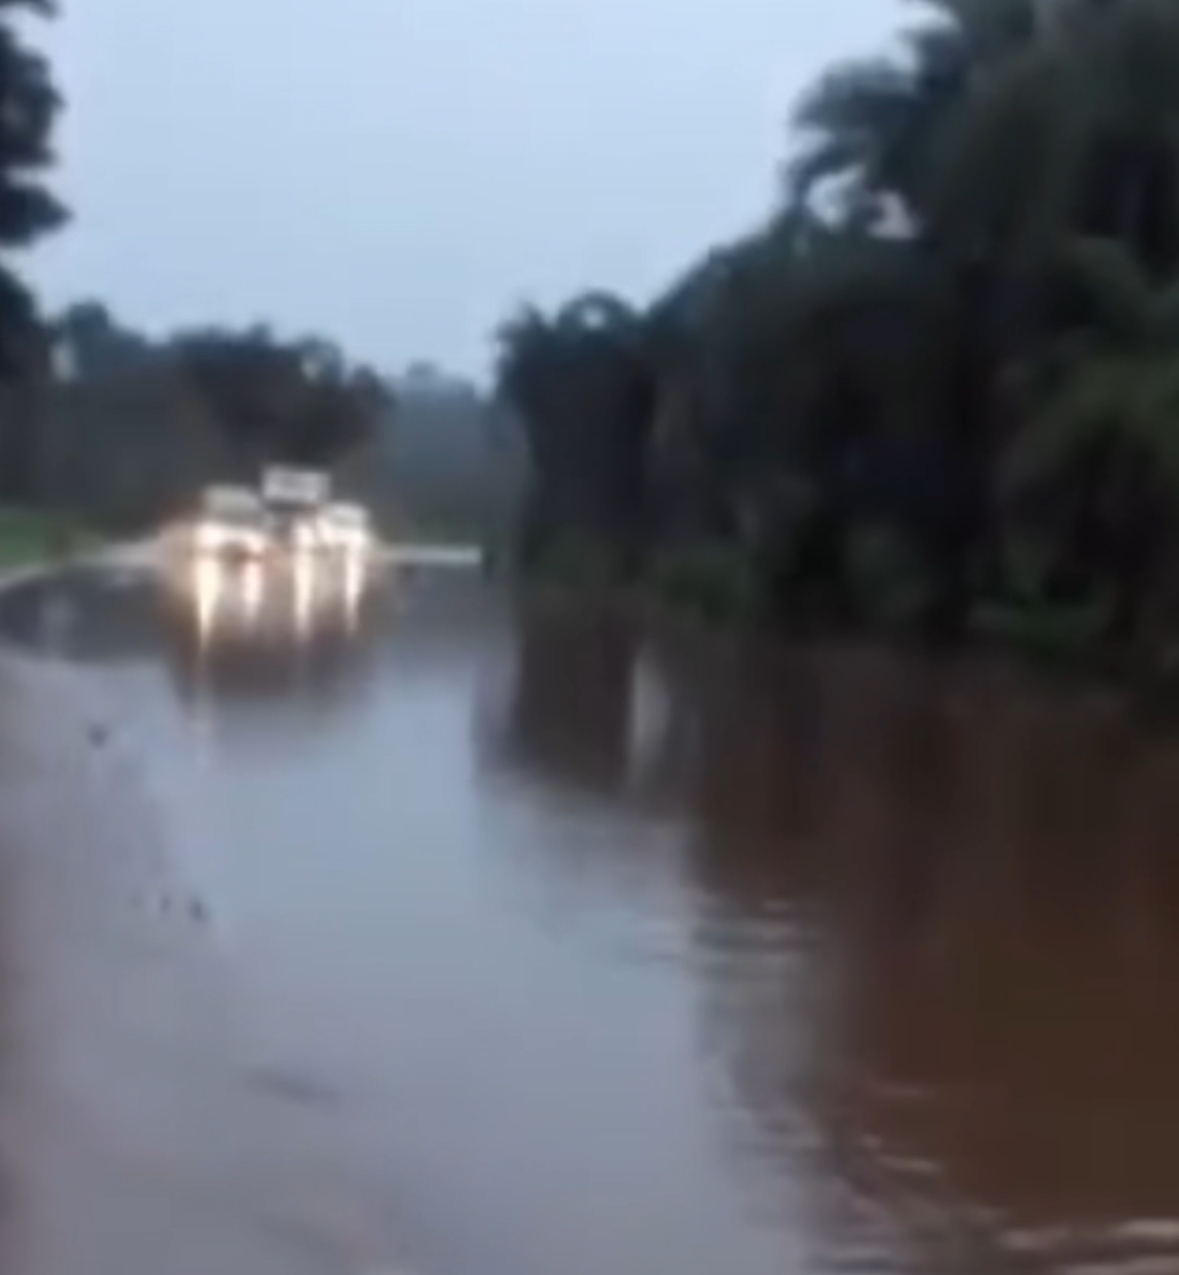 BR-135 entre Colinas e Paraibano quase intransitável após enchente